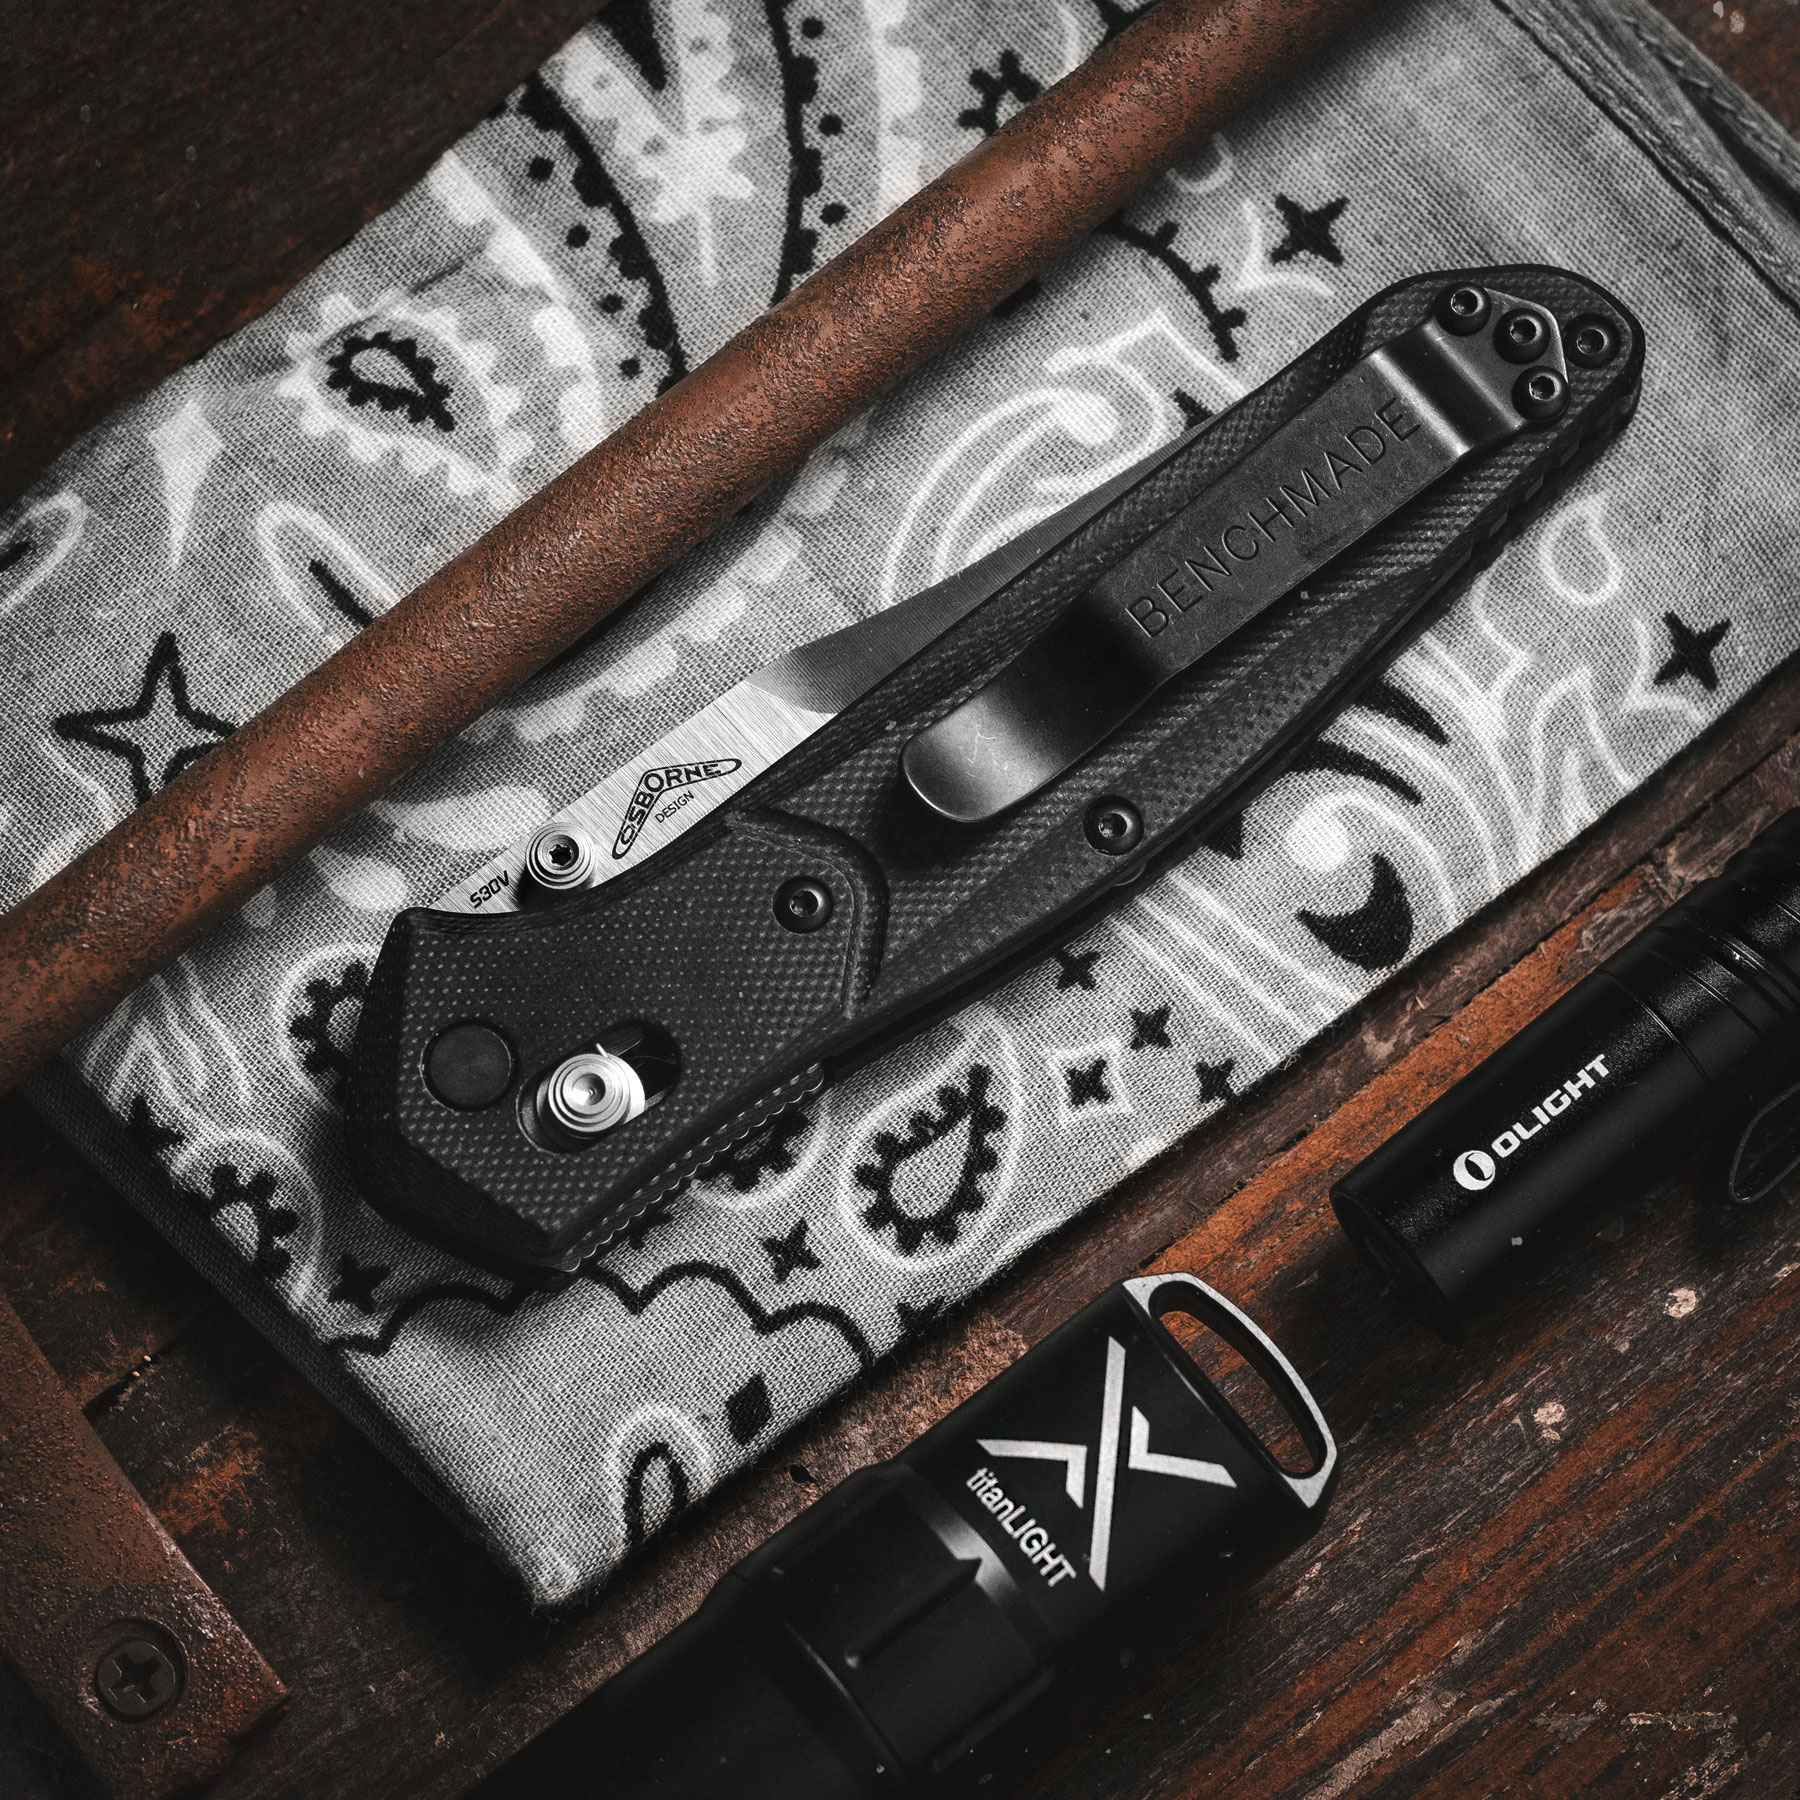 Work Sharp Introduces the Pocket Knife Sharpener »